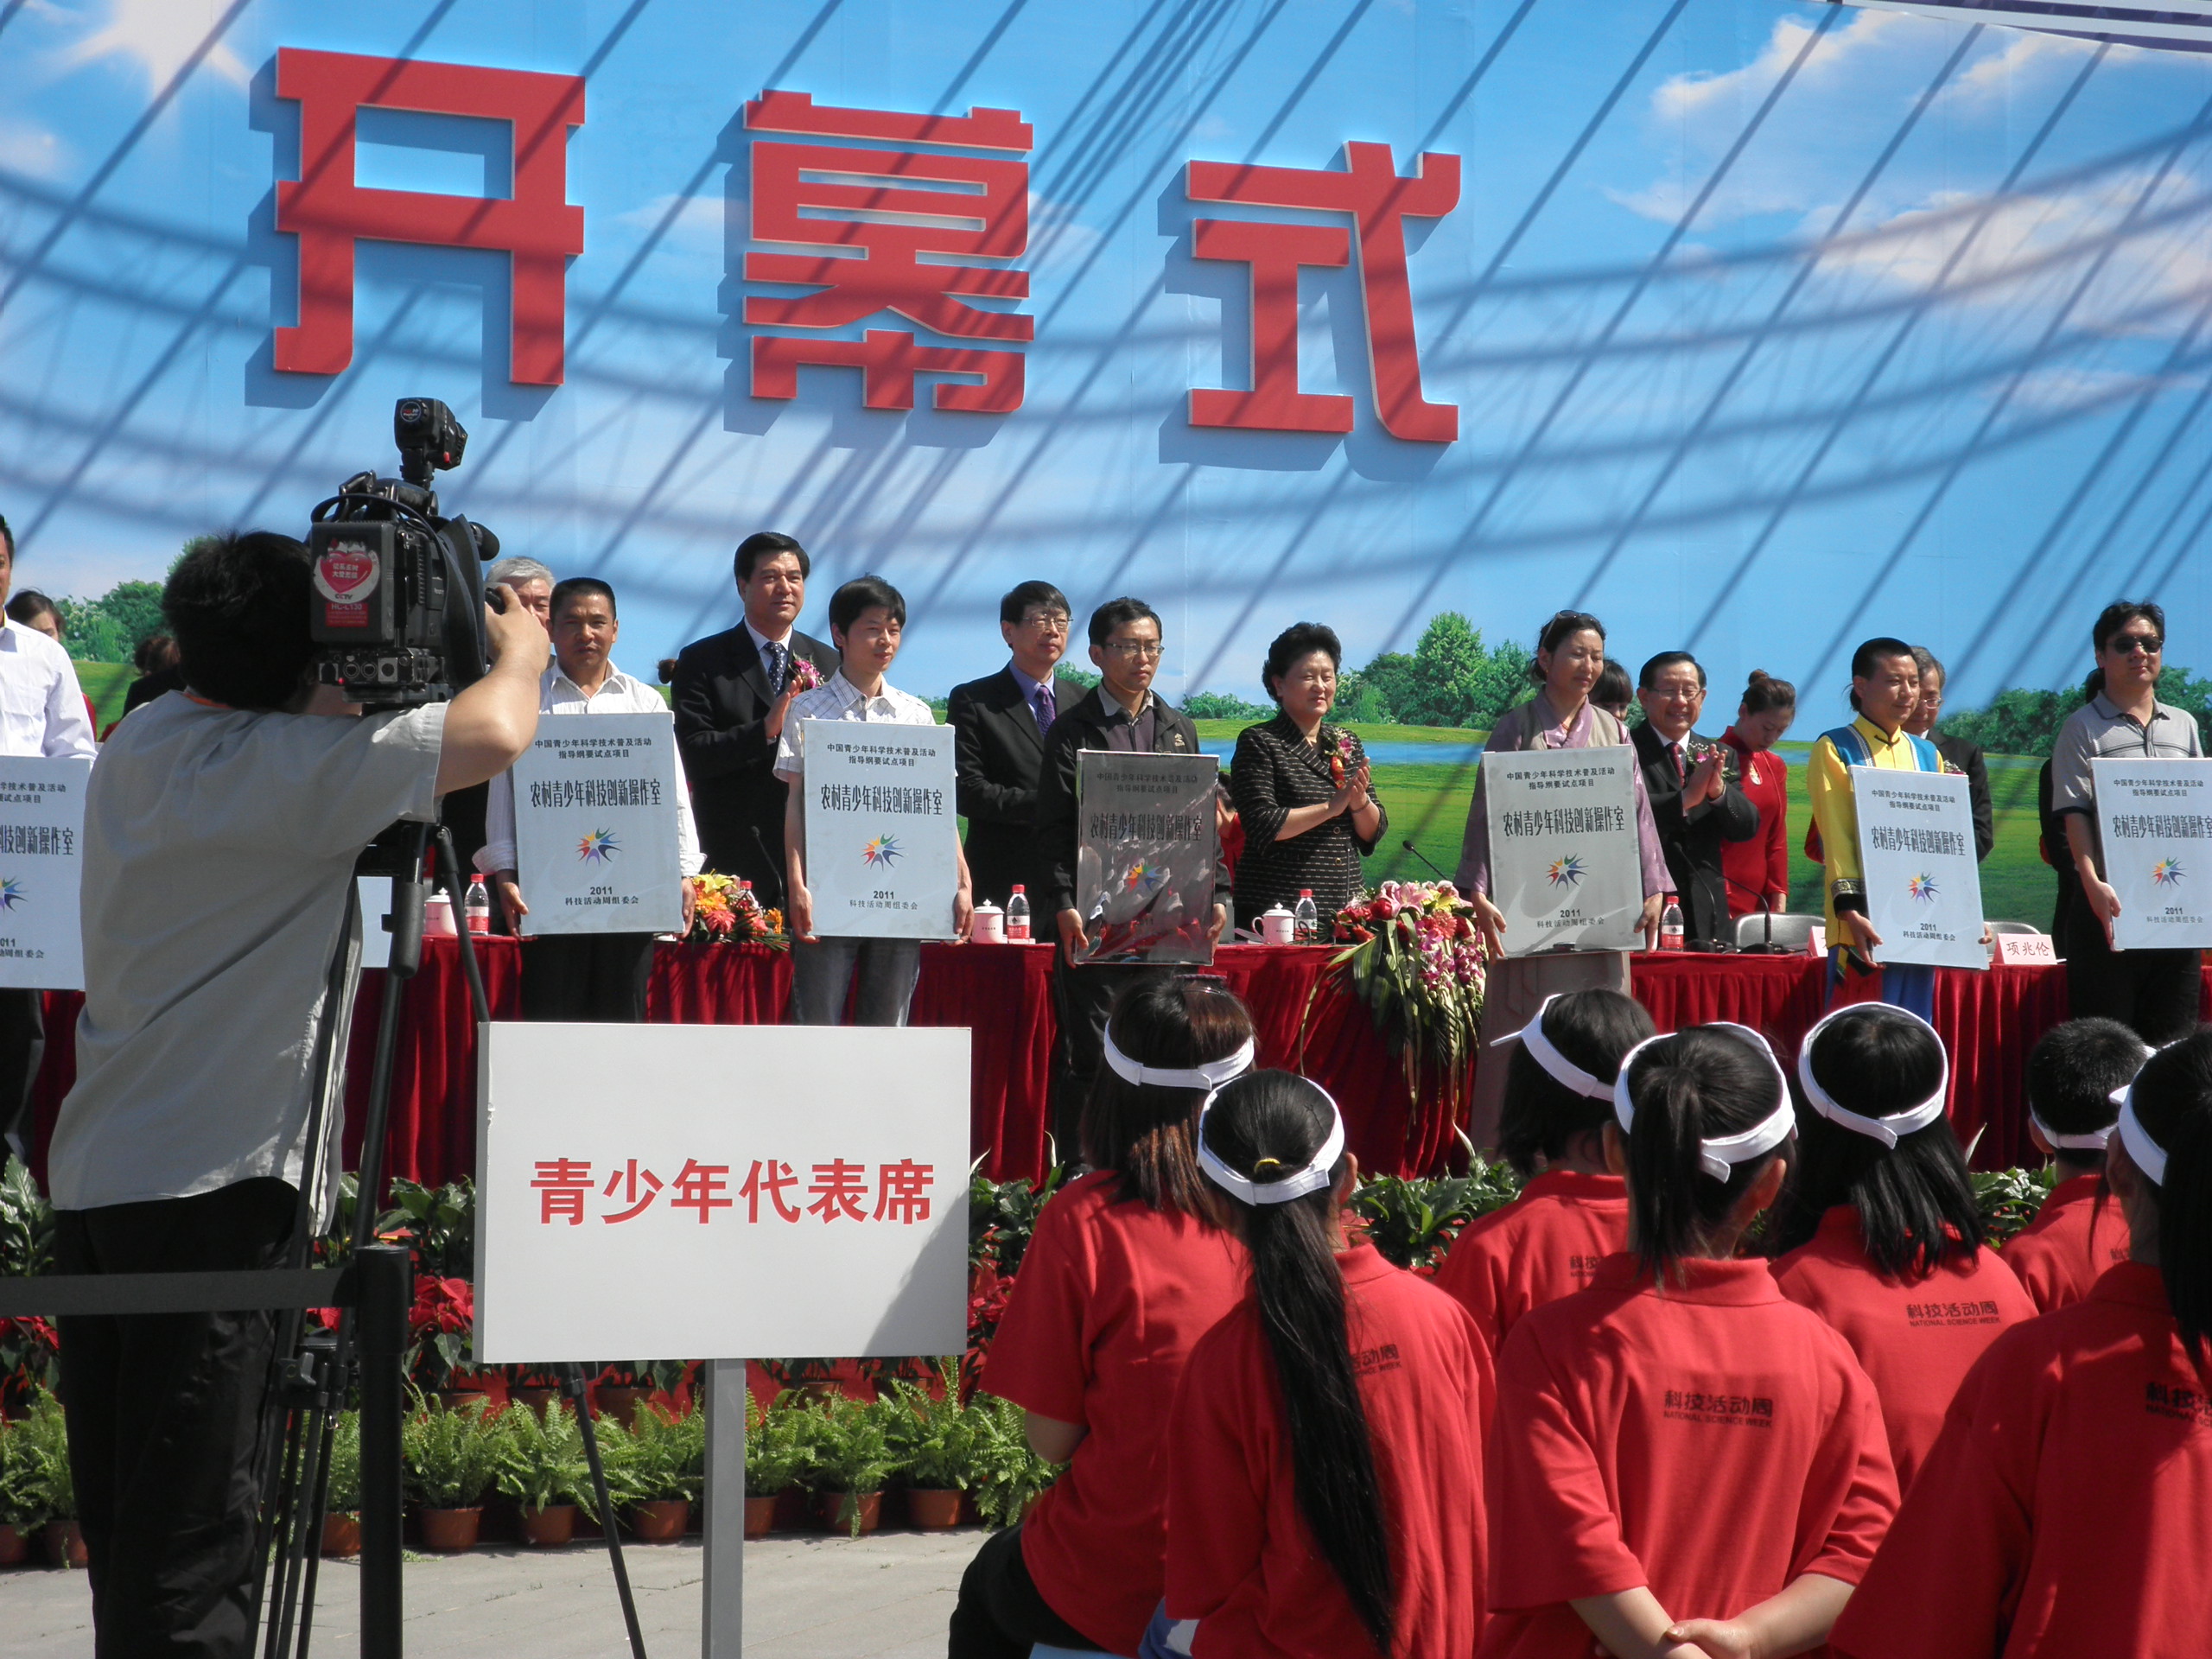 北京长江药学发展基金会参加2011年第17届北京科技周活动总结